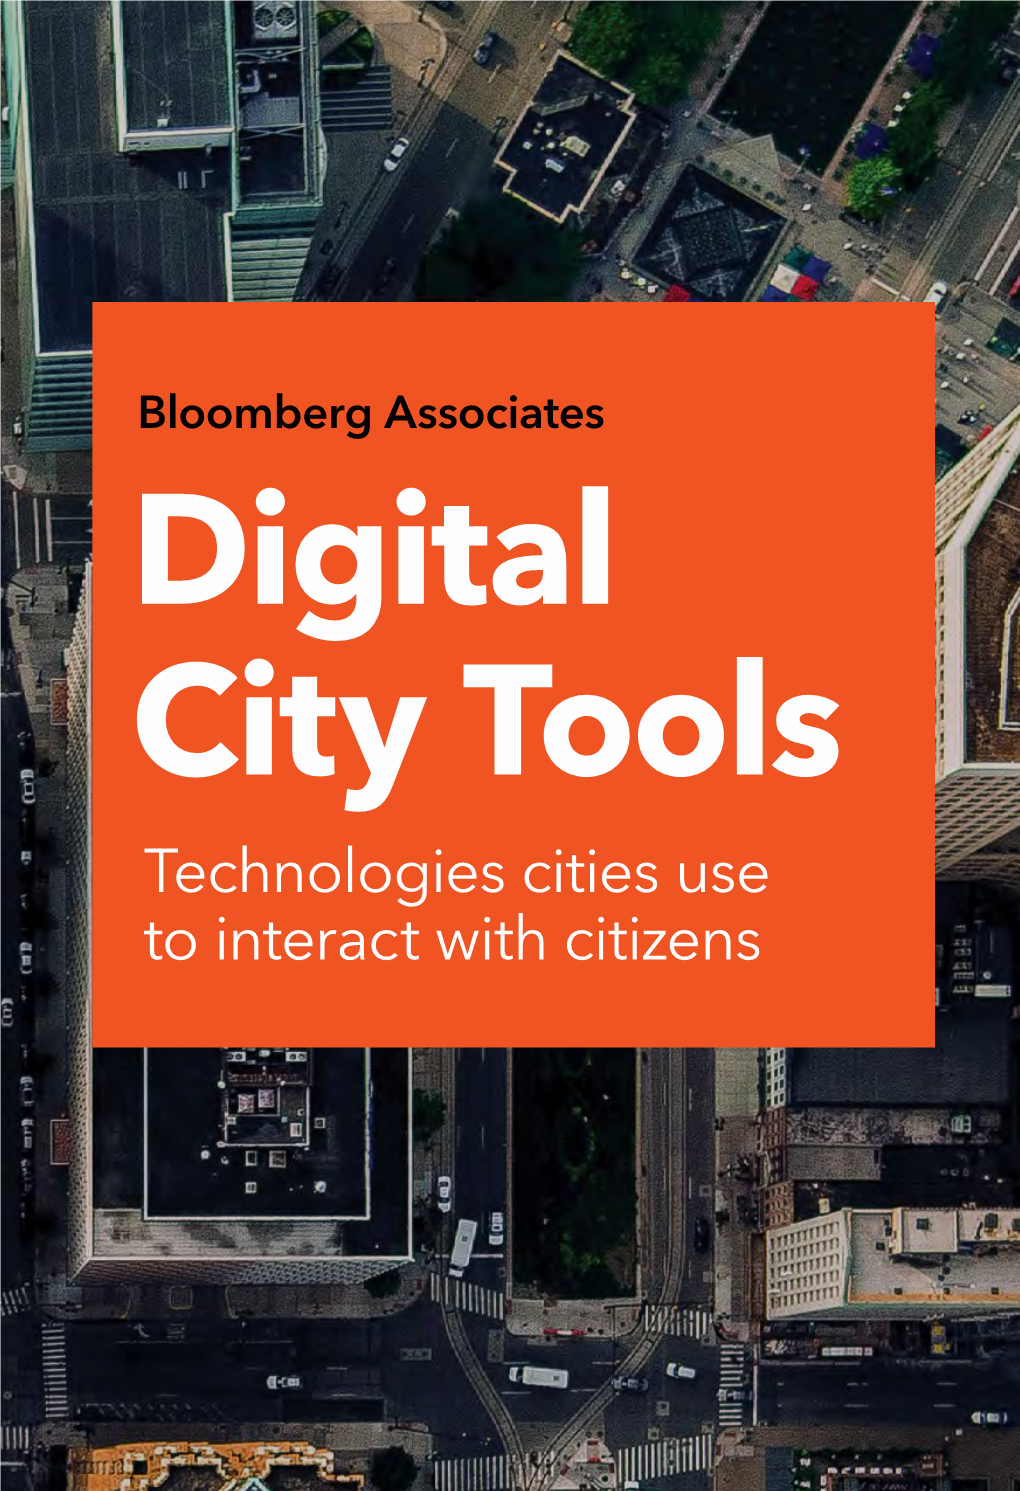 Digital City Tools, Bloomberg Associates, 2018